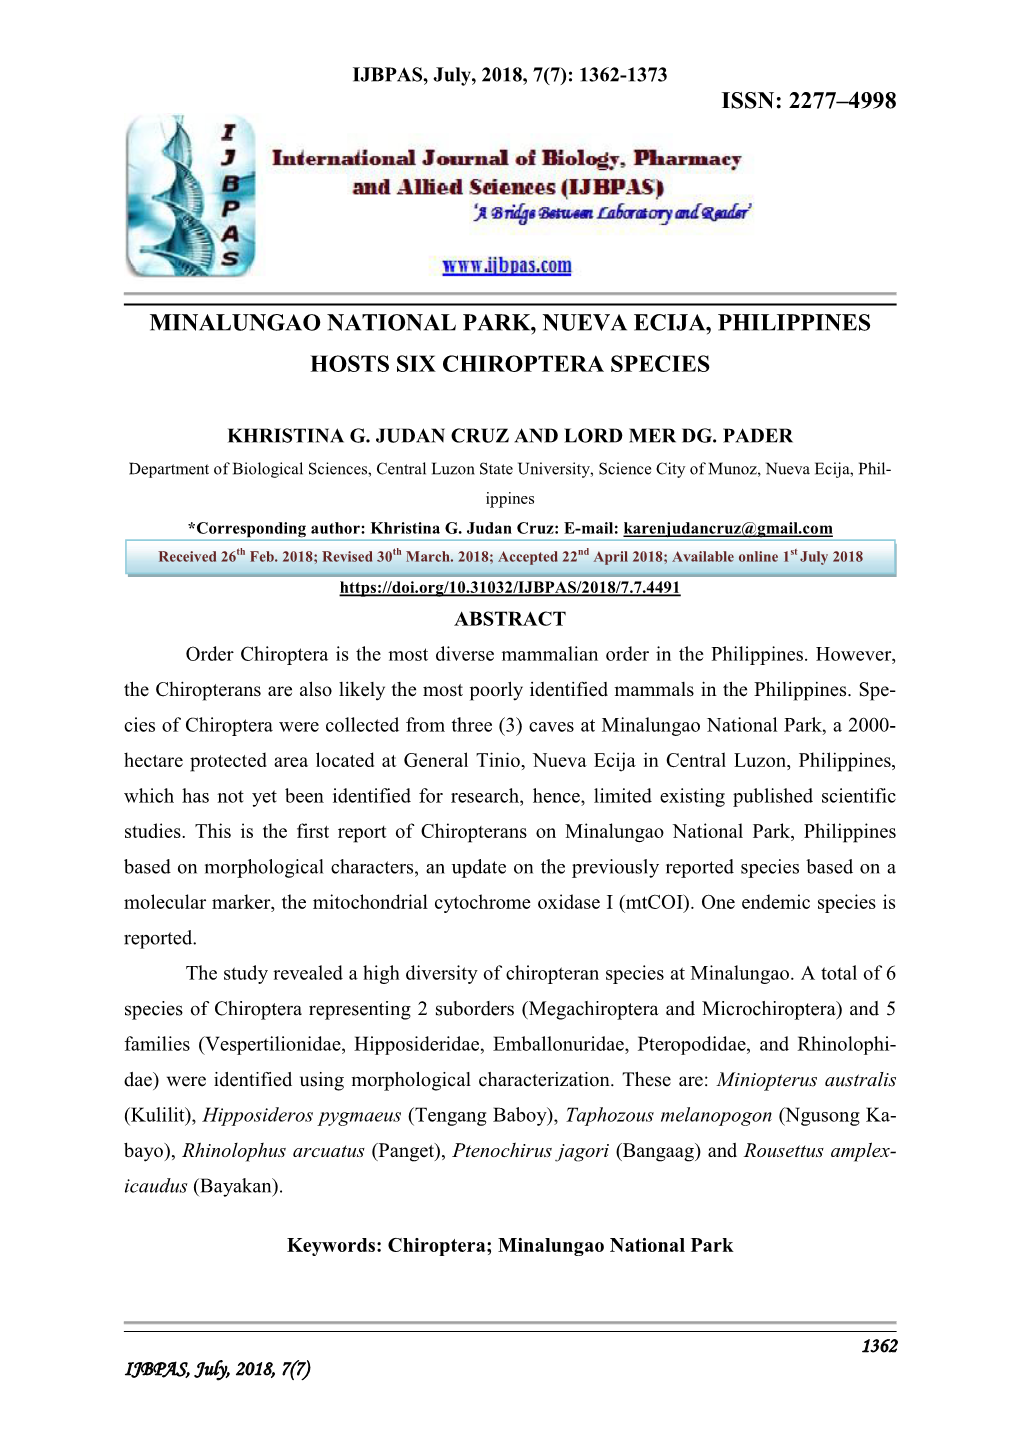 Minalungao National Park, Nueva Ecija, Philippines Hosts Six Chiroptera Species